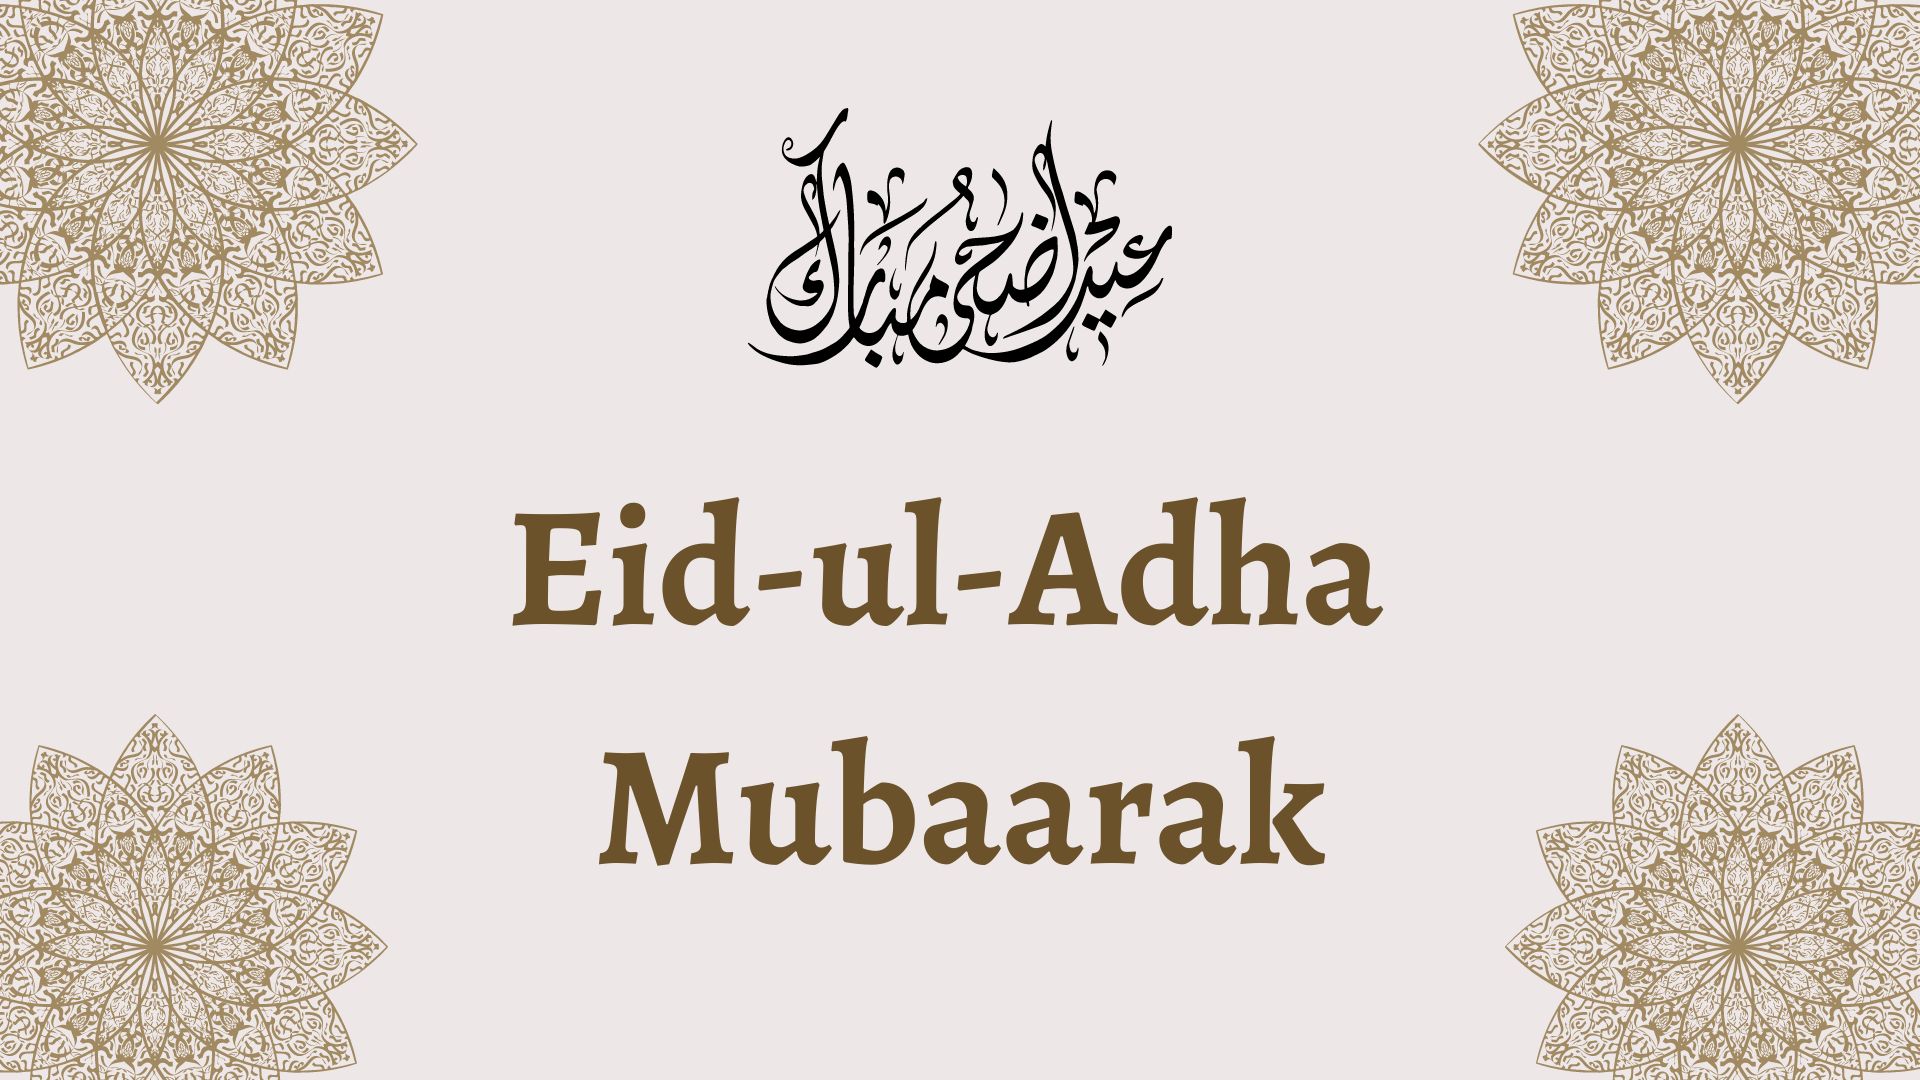 Eid-ul-Adha featured image